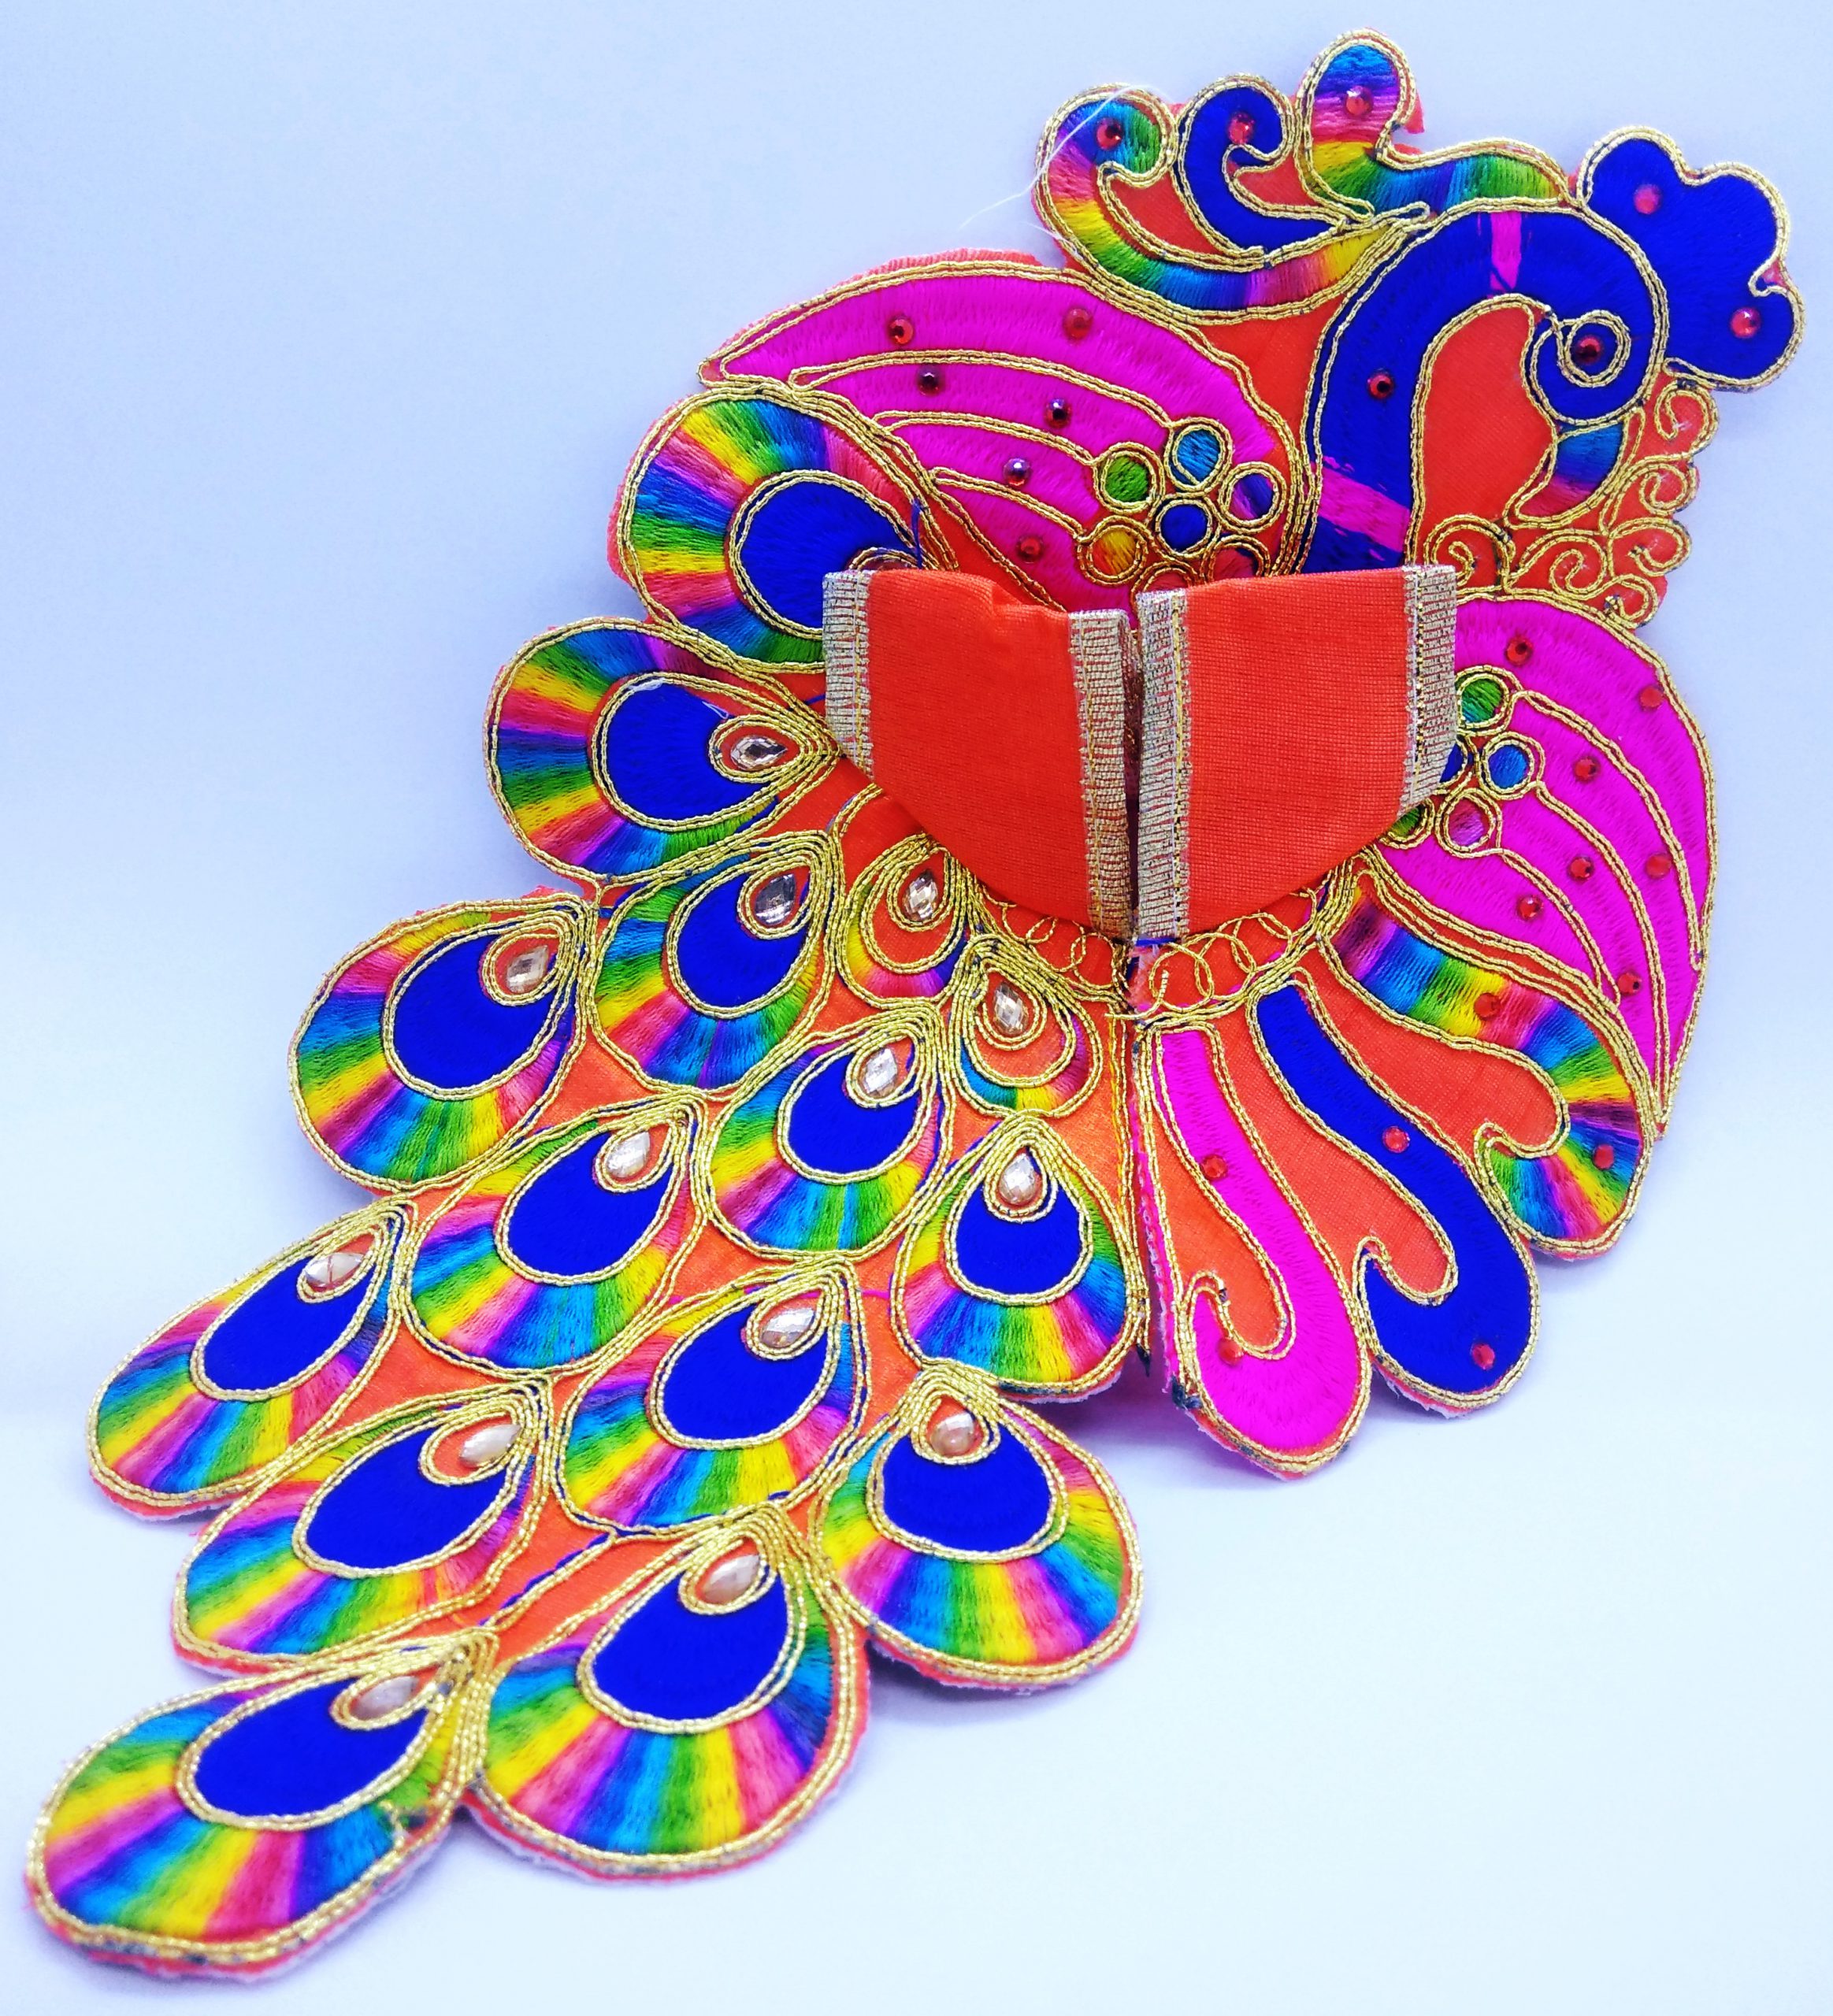 Laddu gopal peacock type dress